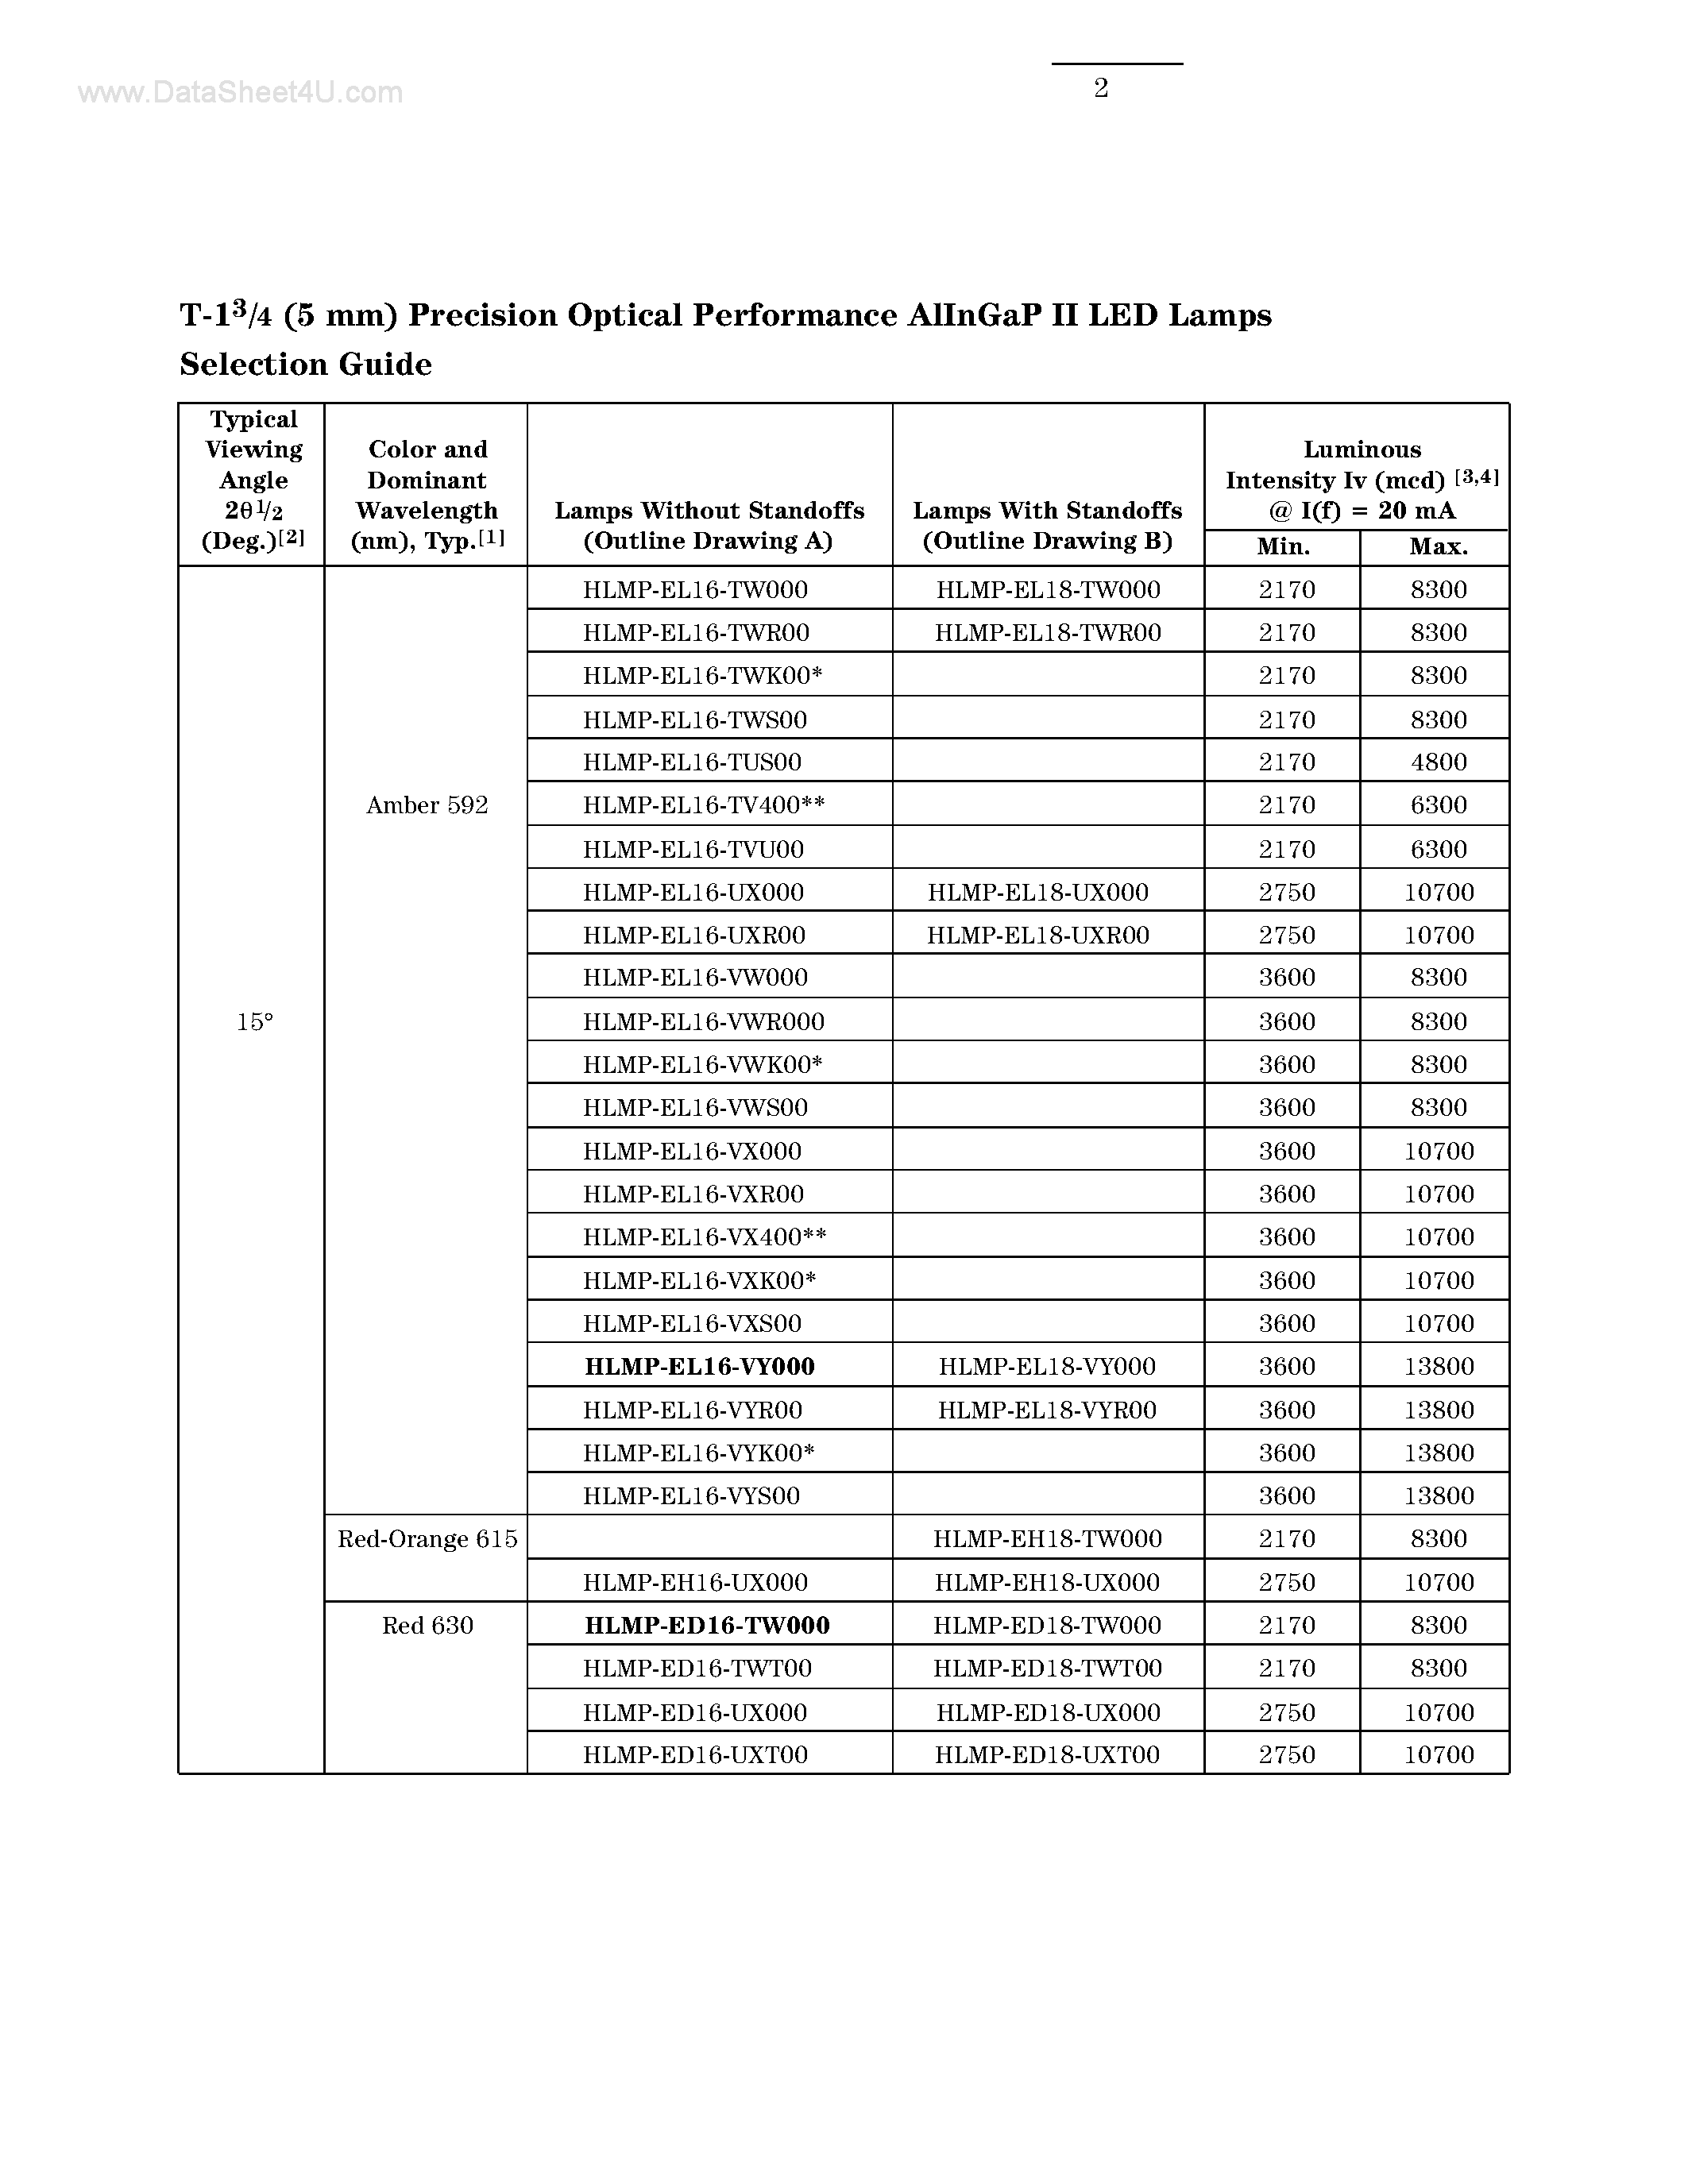 Даташит HLMP-EGxx - T-1 (5mm) Precision Optical Performance AlInGaP LED Lamps страница 2